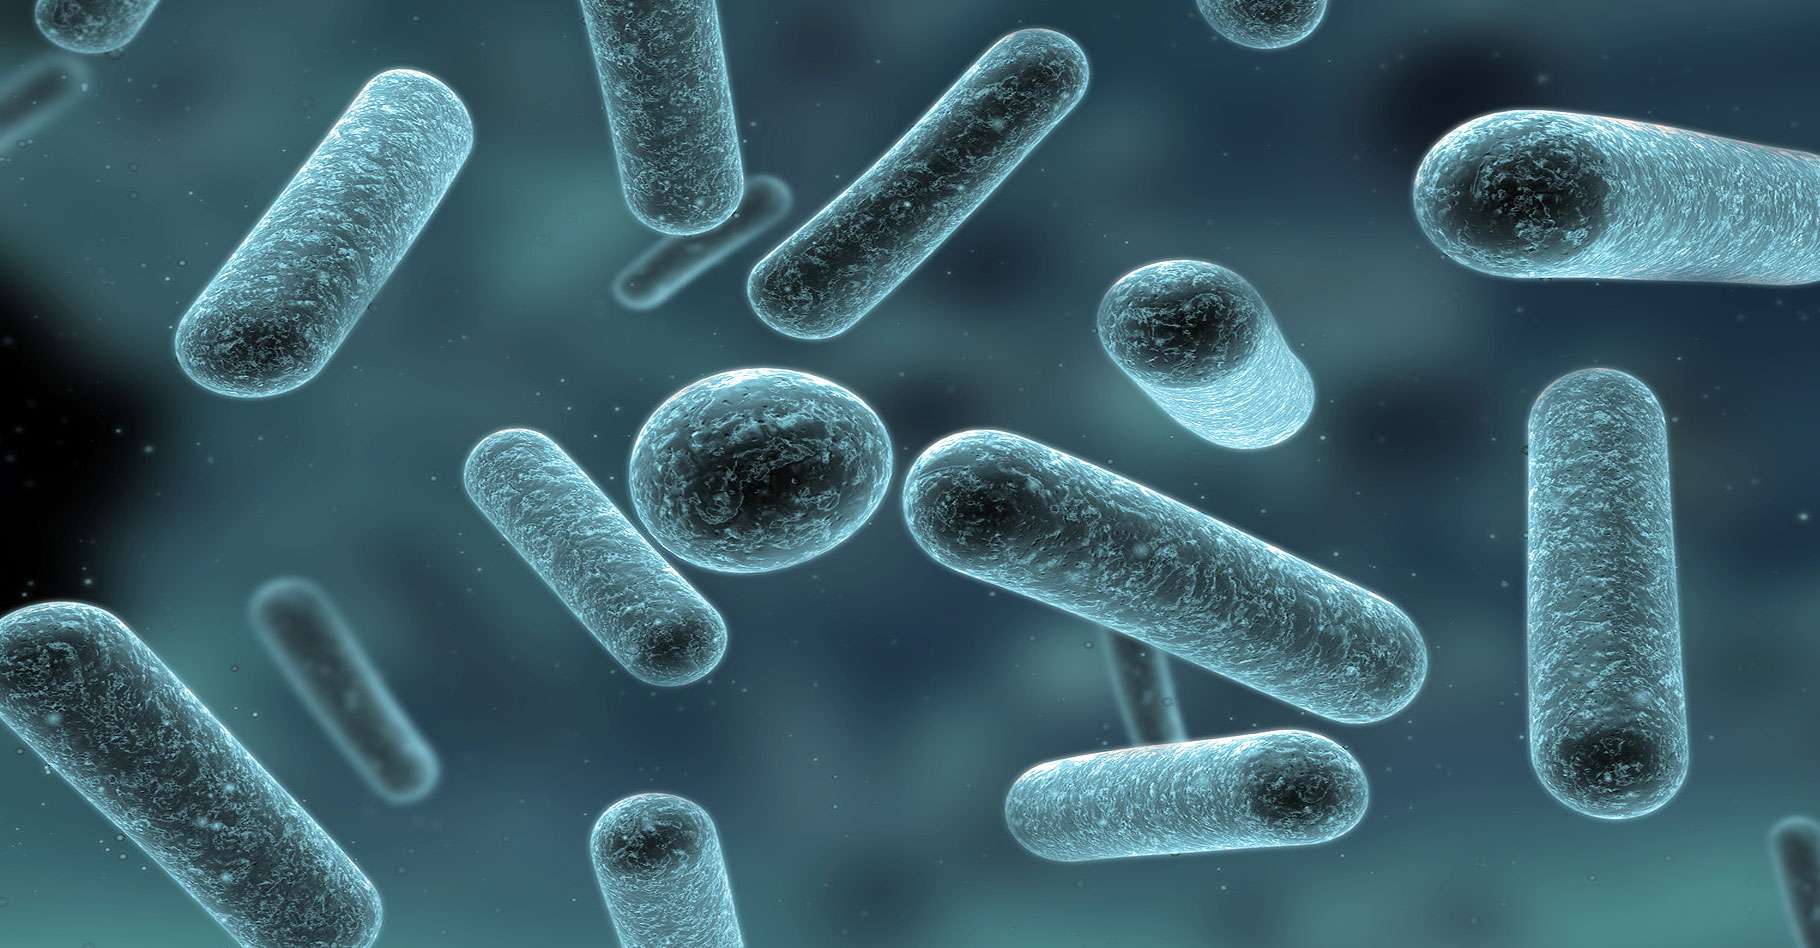 Bactérie lactique : définition et explications